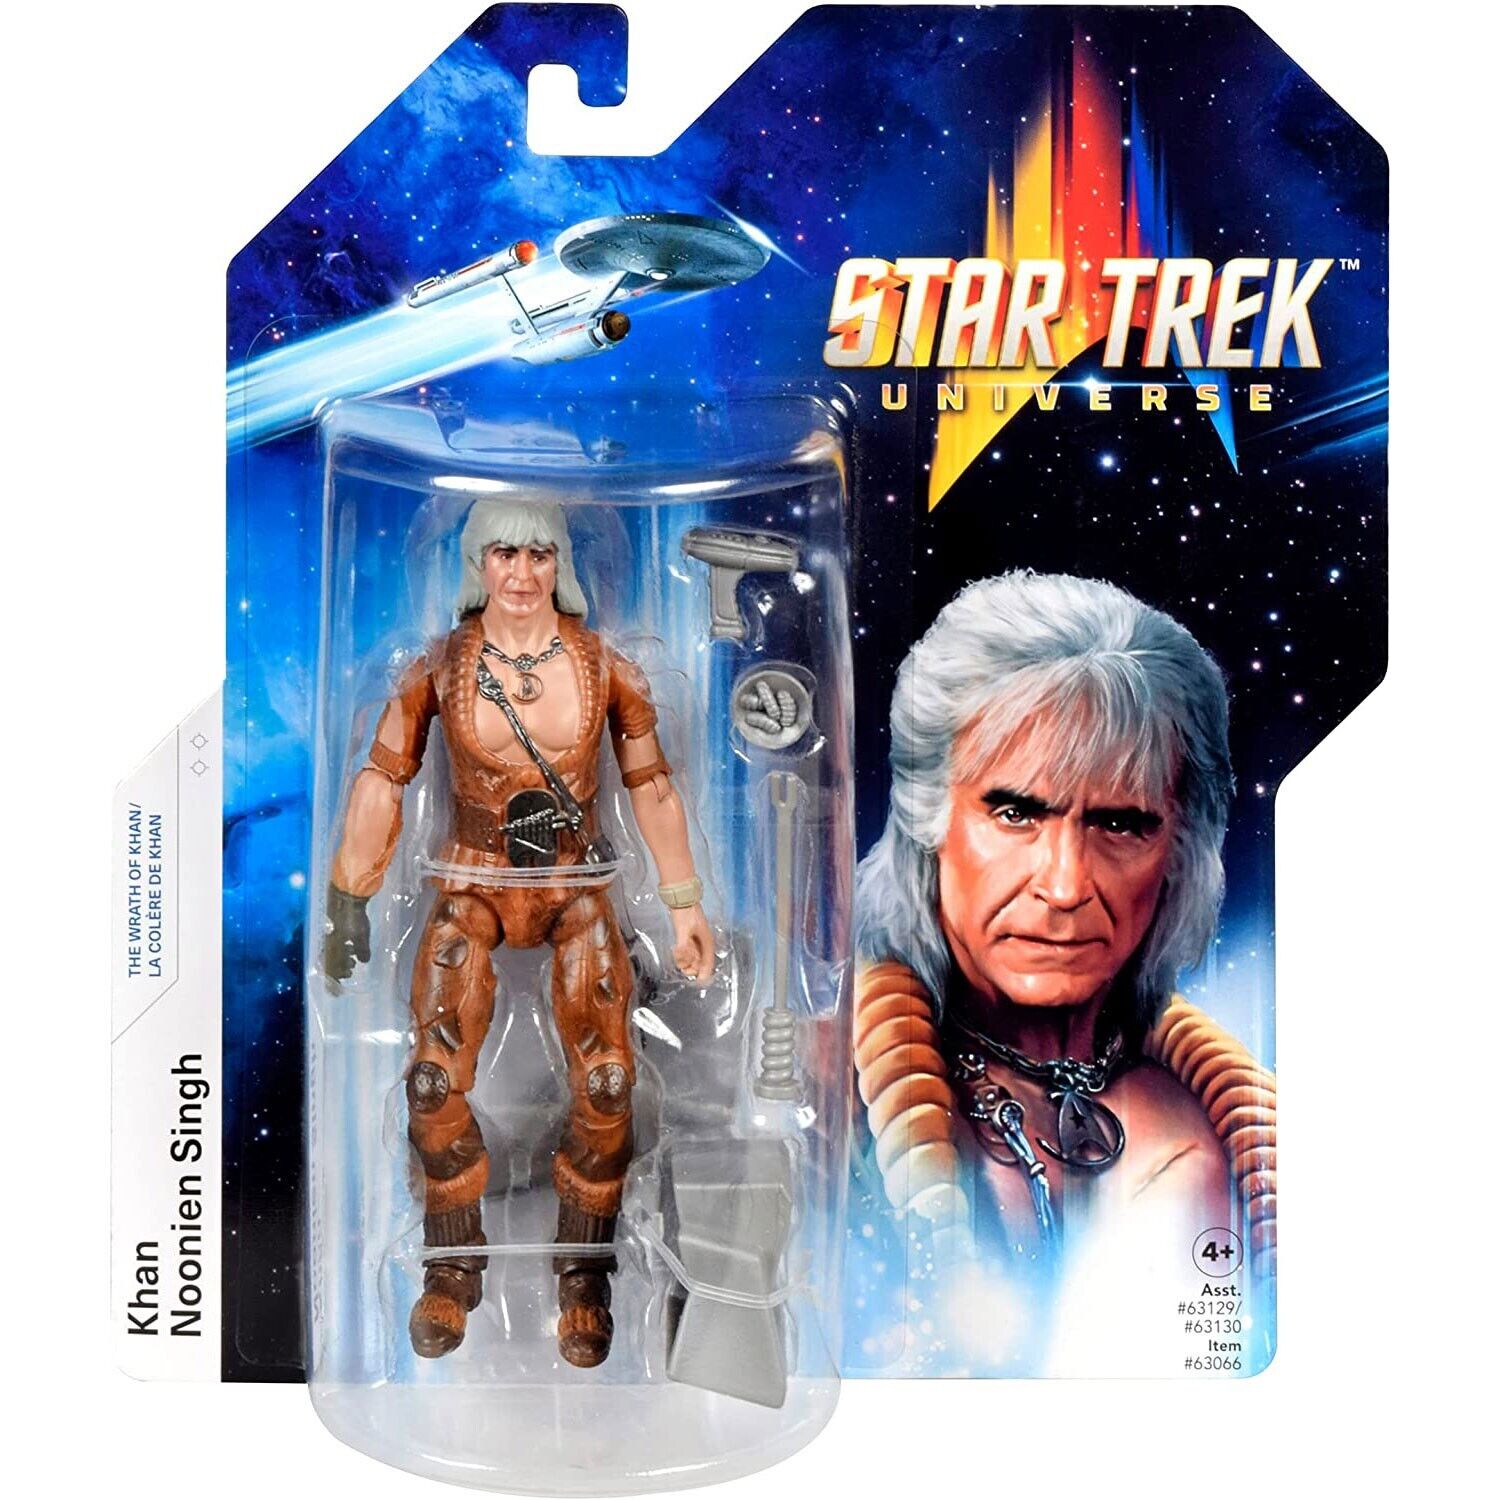 Star Trek Khan Noonien Singh Figure - 5-Inch - The Wrath of Khan - New in Box